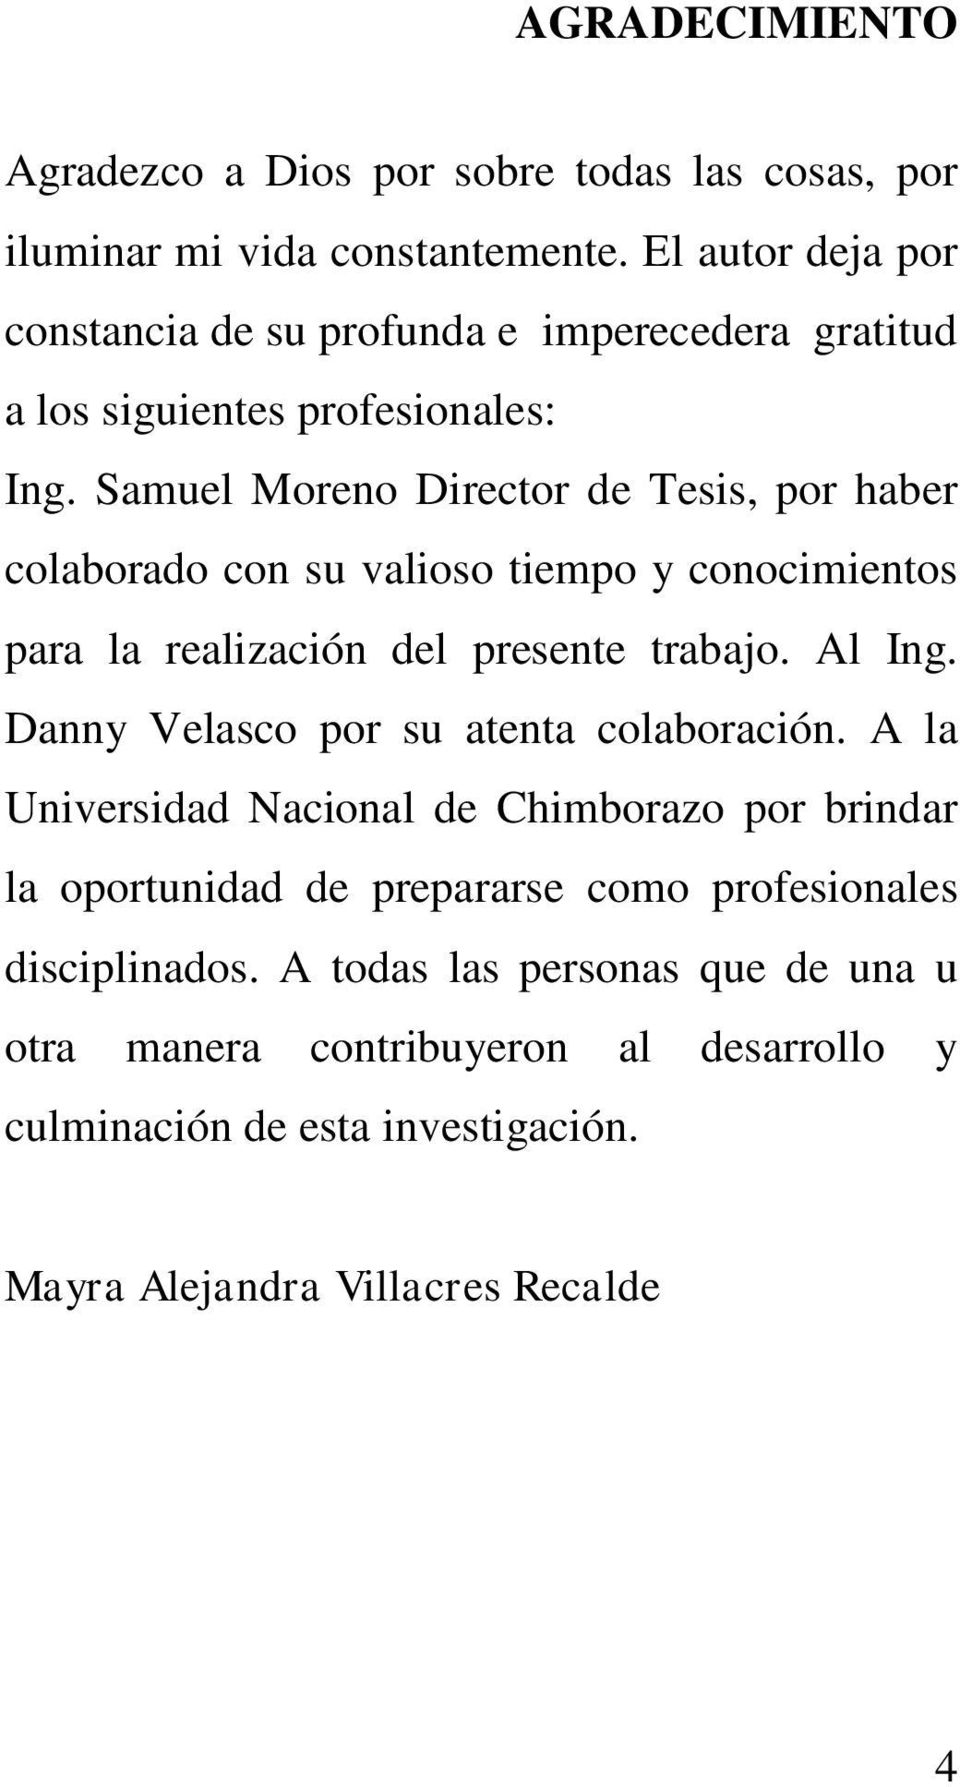 Samuel Moreno Director de Tesis, por haber colaborado con su valioso tiempo y conocimientos para la realización del presente trabajo. Al Ing.